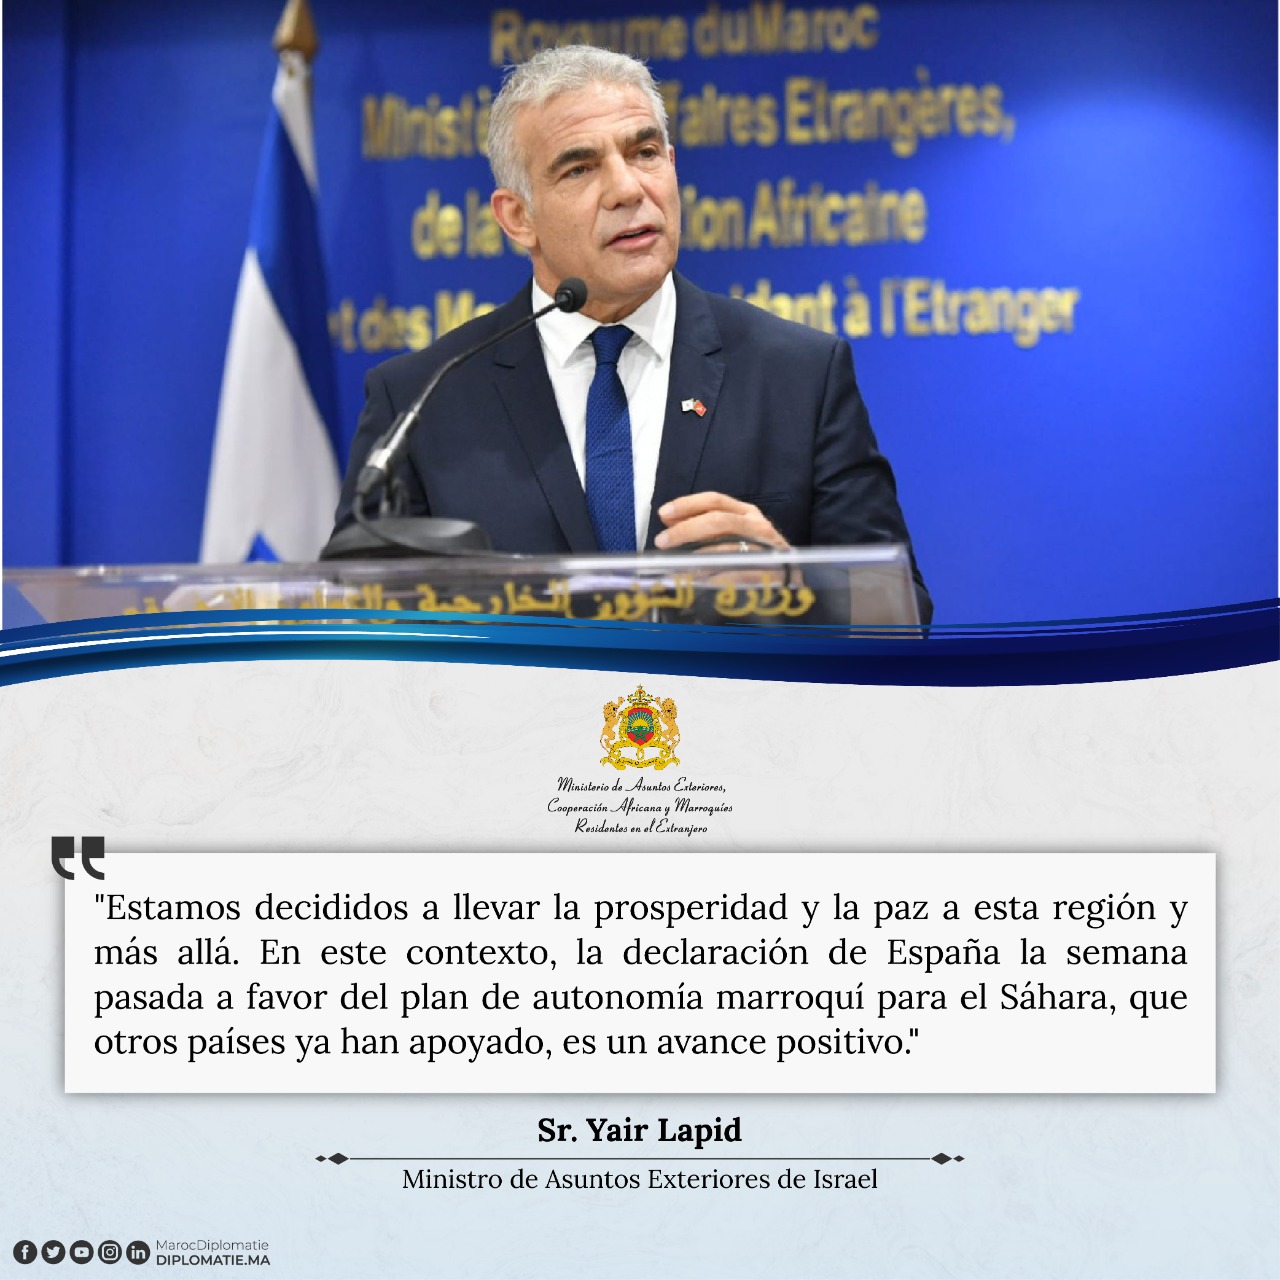 Declaración del Sr. Yair Lapid, Ministro de Asuntos Exteriores de Israel, tras la Cumbre del Néguev en Israel. 